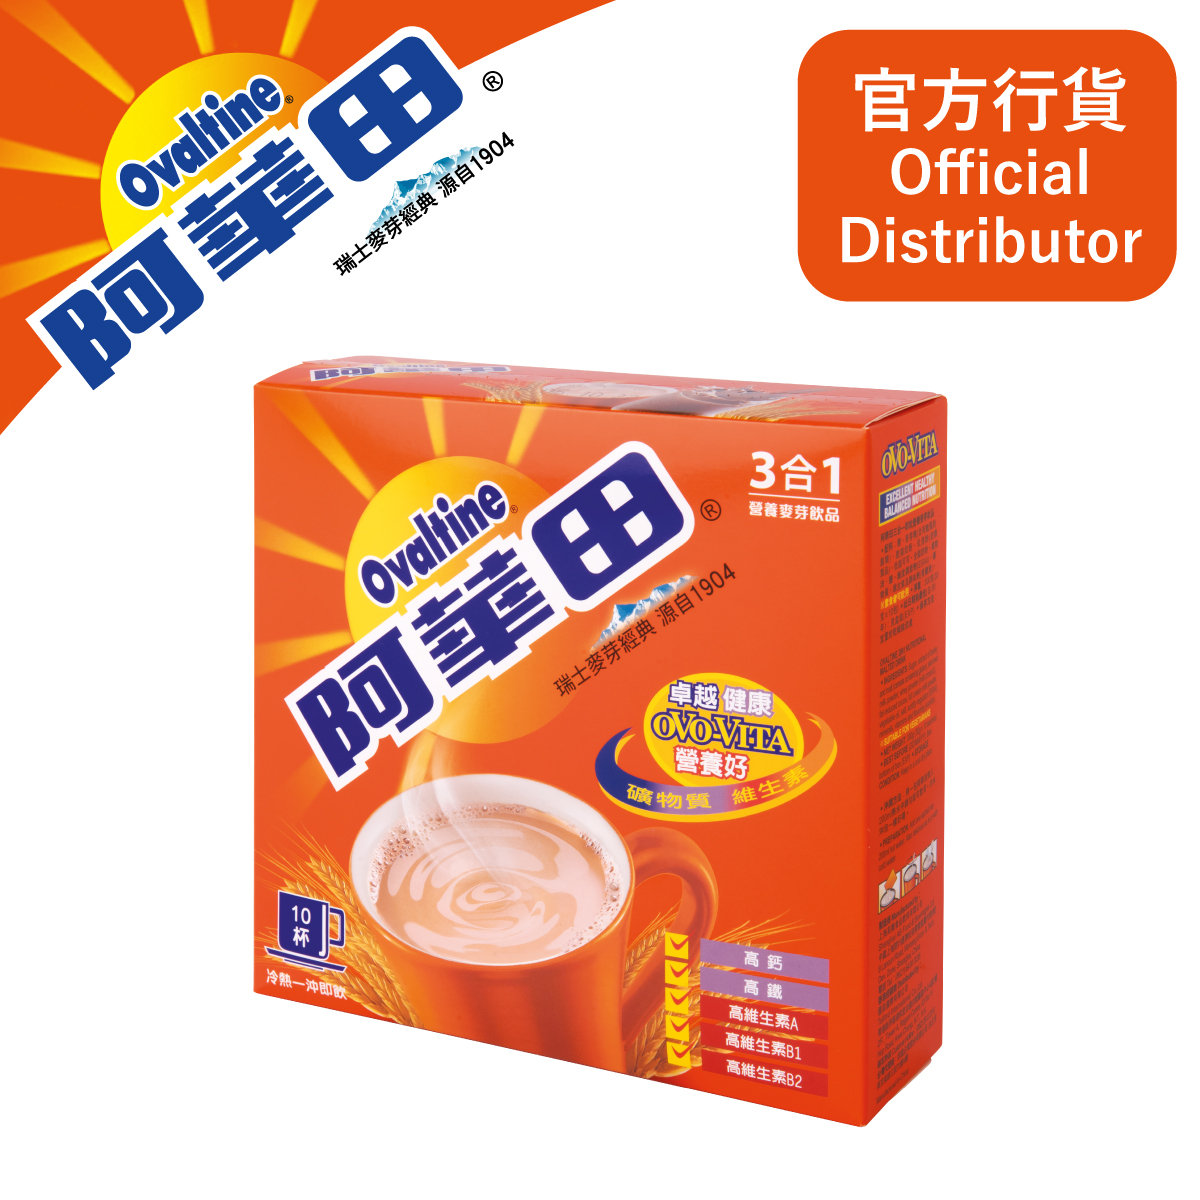 阿華田 - 3合1即飲營養麥芽飲品 30G 沖調包 10包盒裝